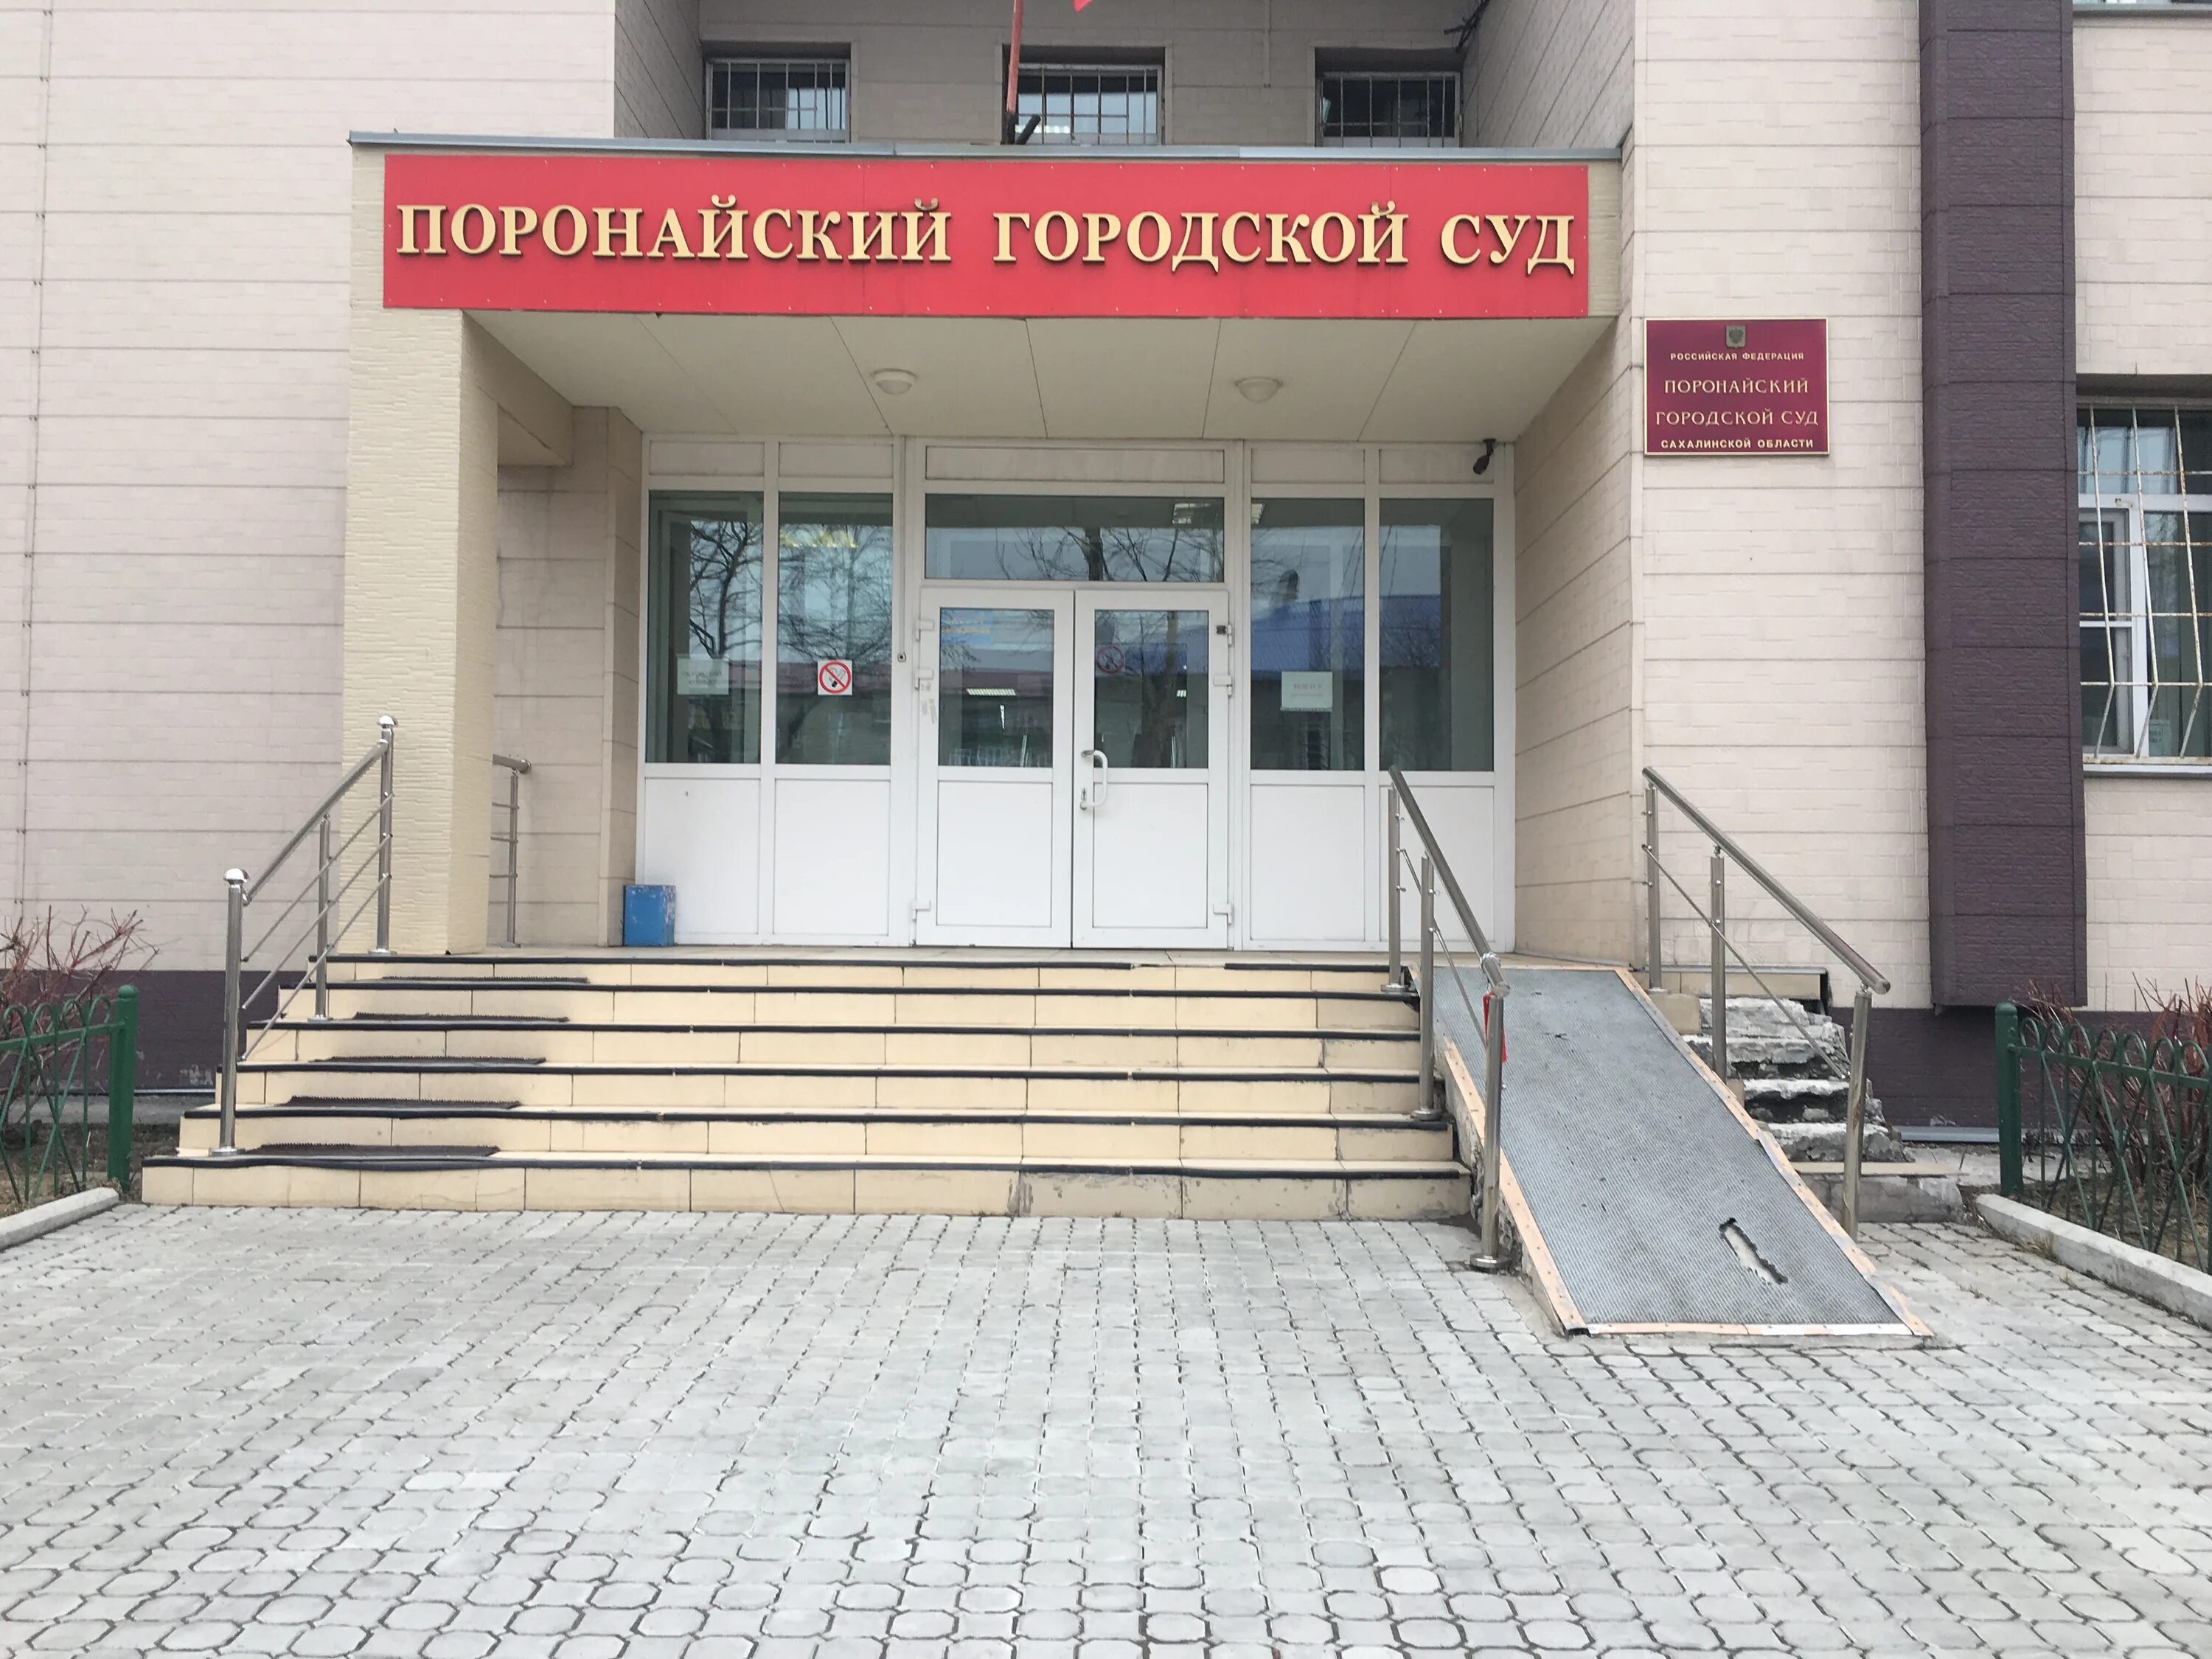 Горячеключевской городской суд сайт